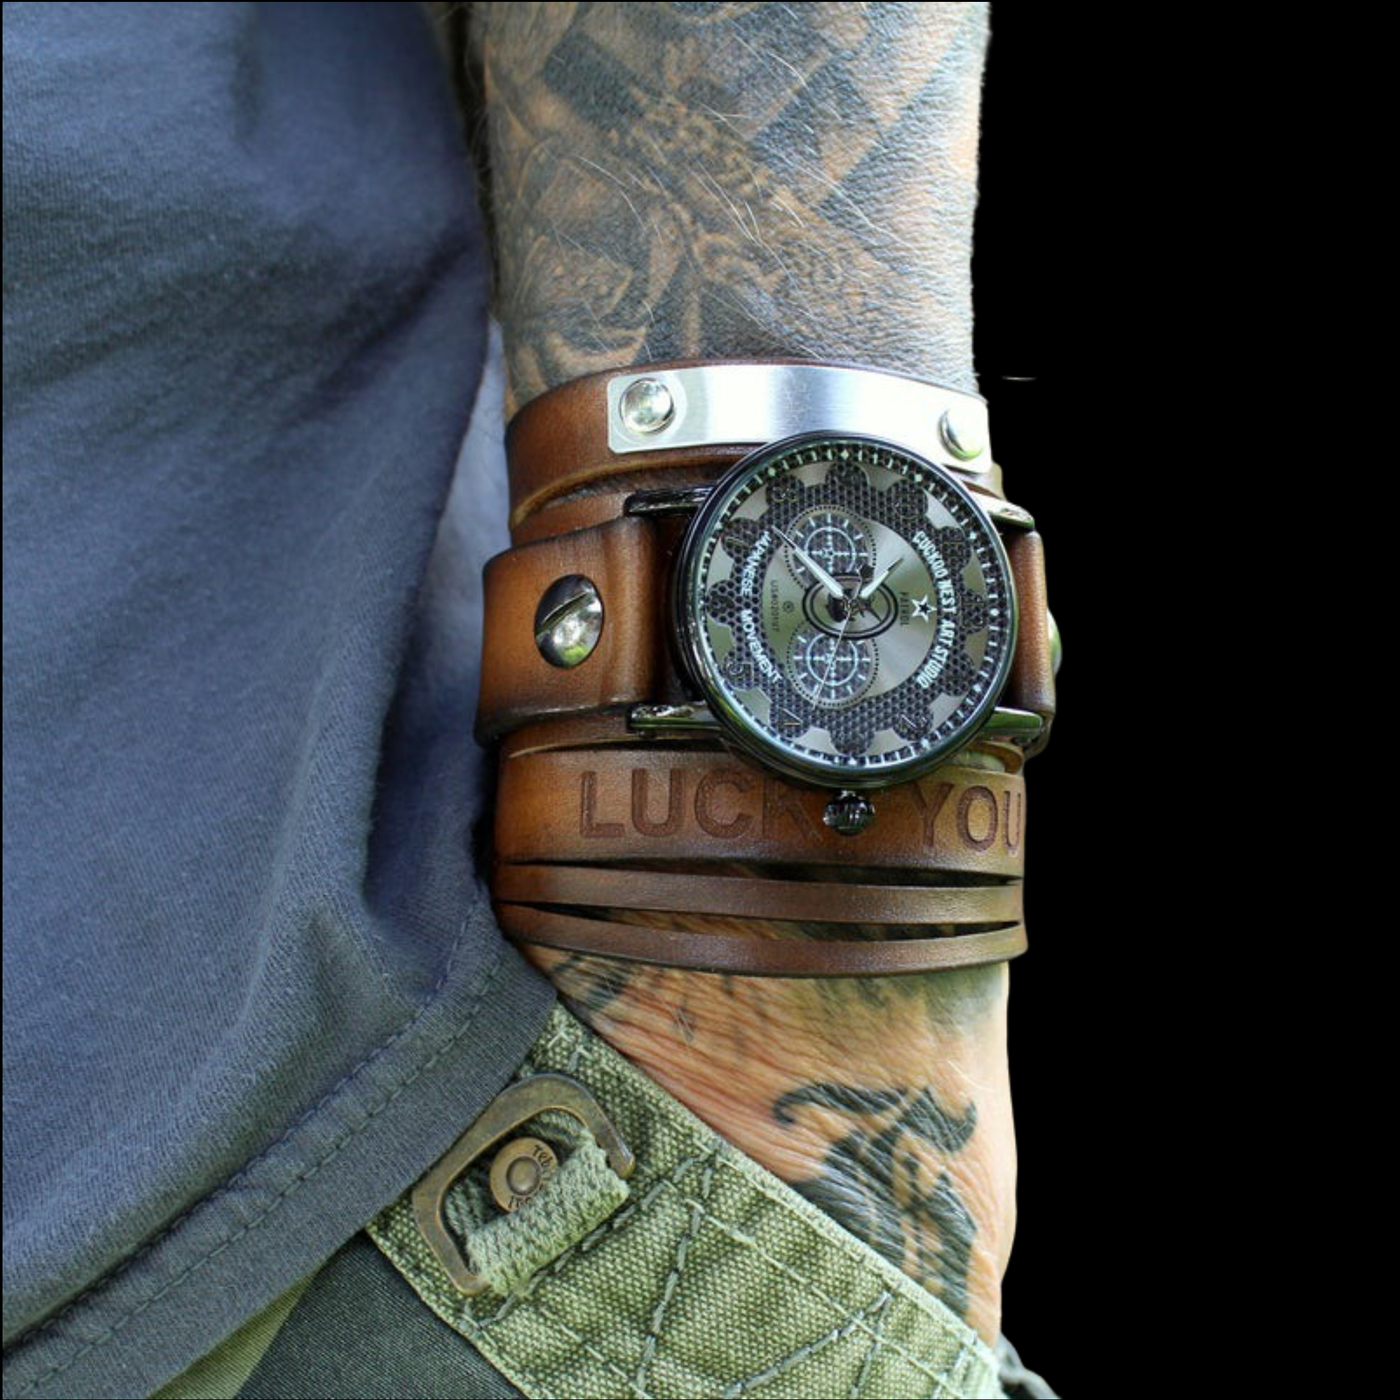 The Adventurer Leather Cuff Watch